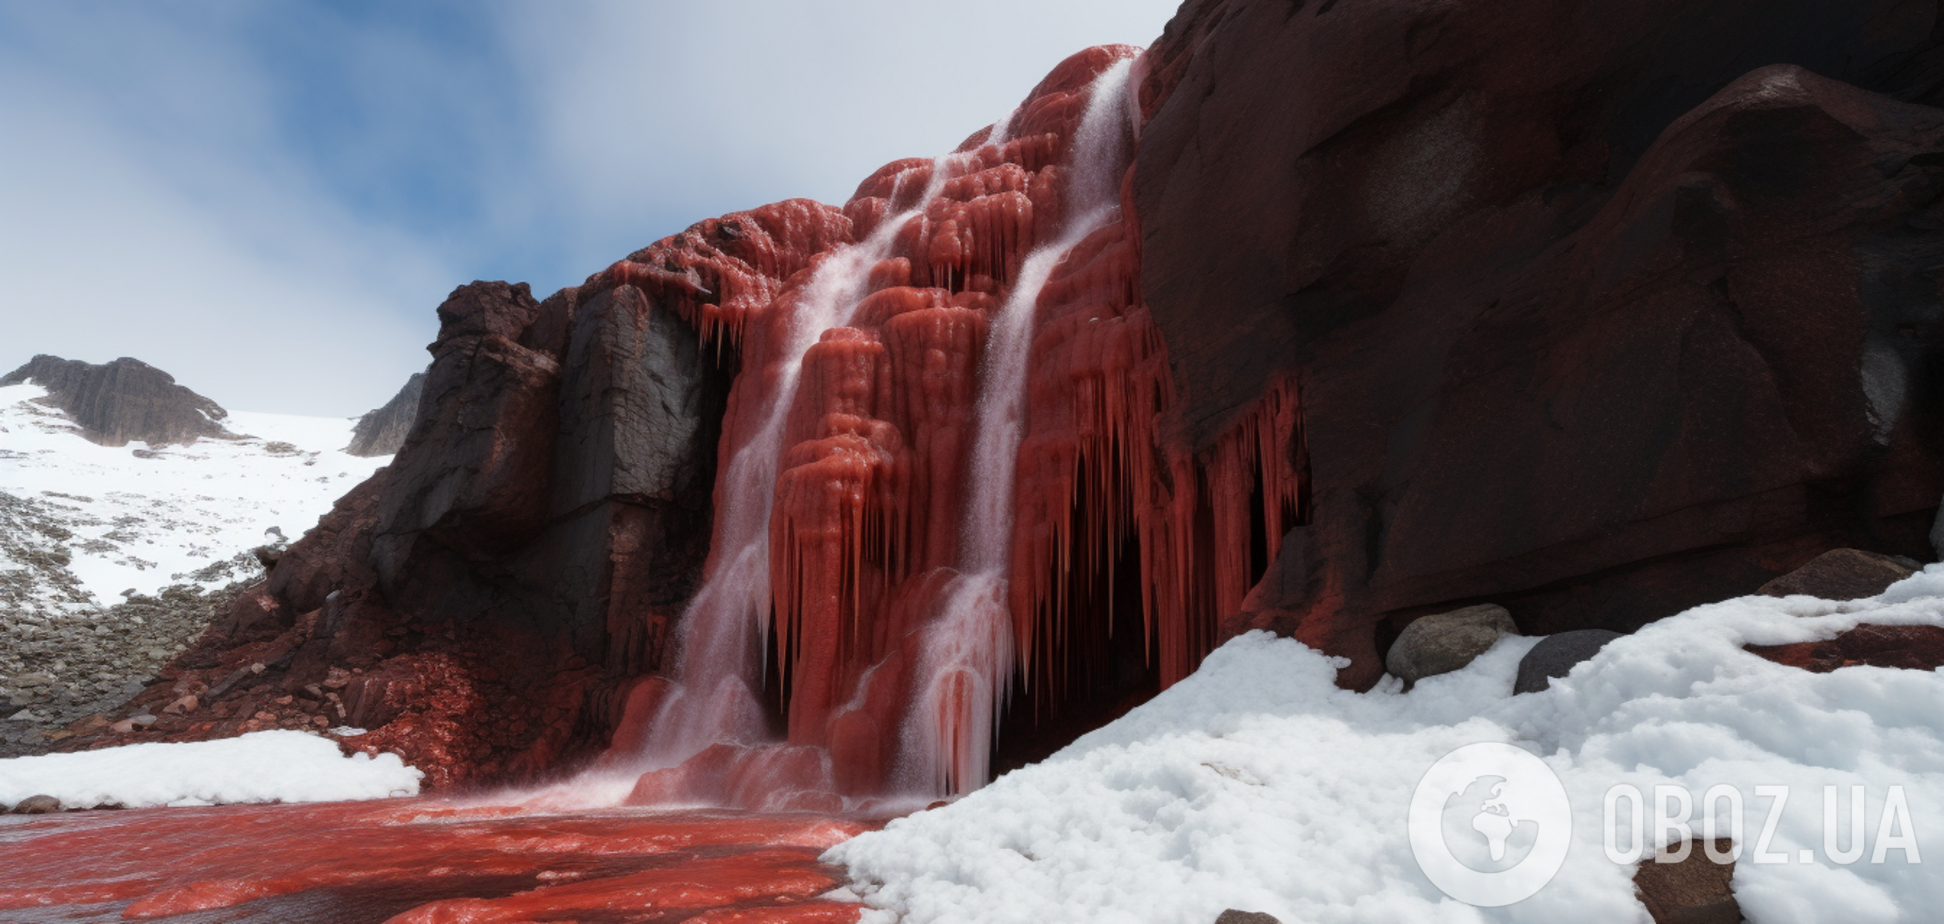 Предвестники апокалипсиса? Раскрыта тайна кровавых водопадов Антарктиды